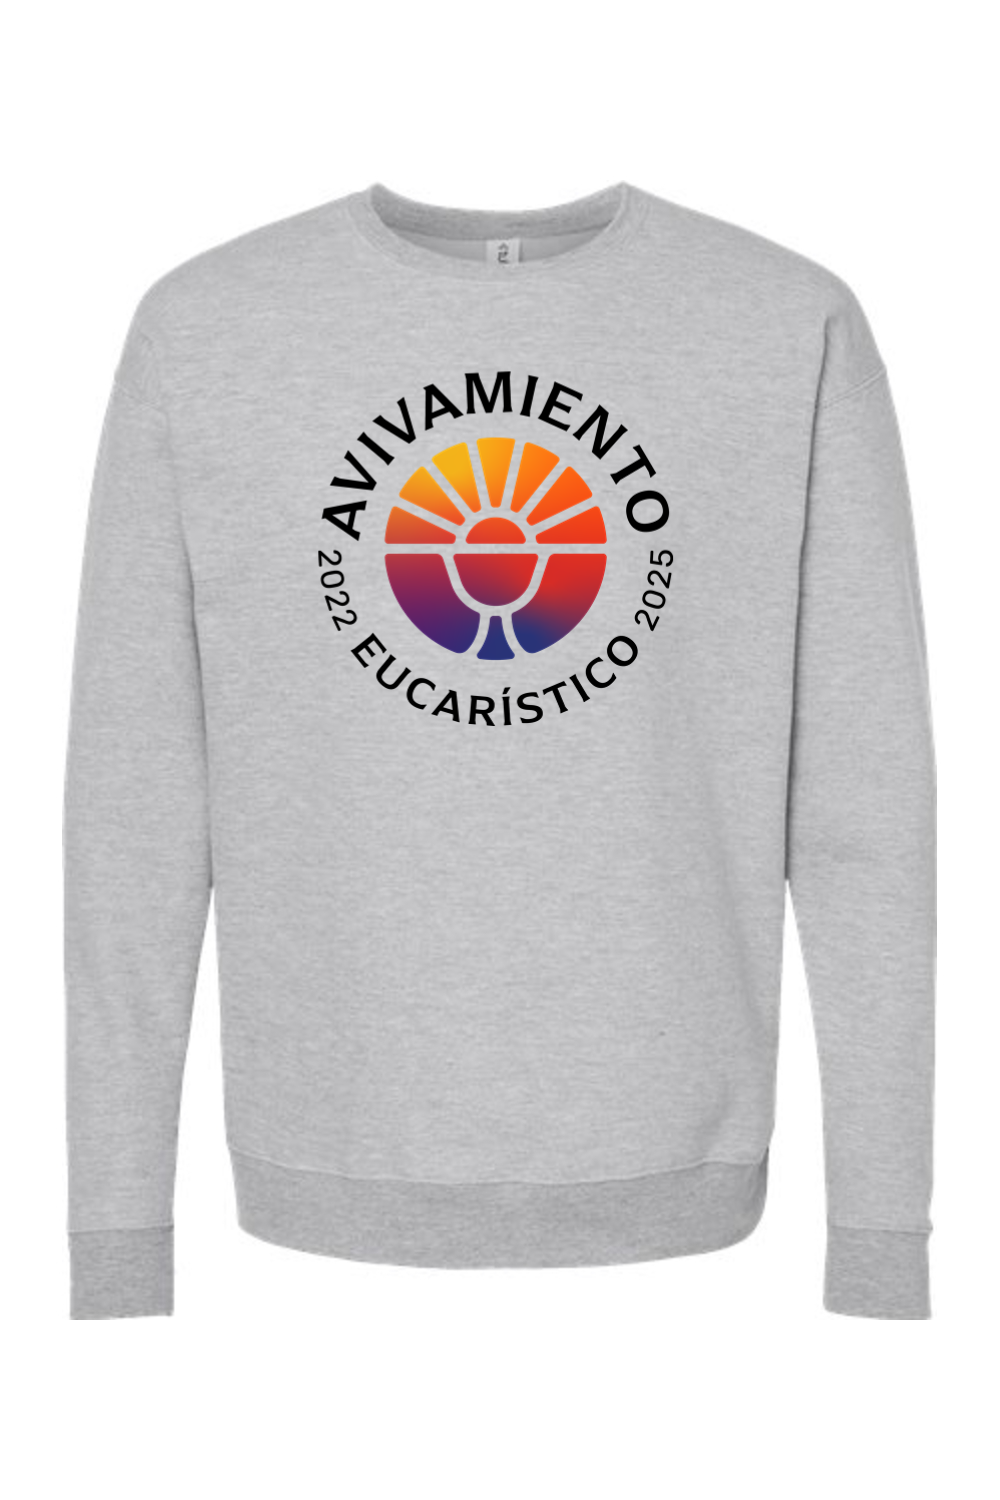 Revival Crewneck Sweatshirt - español